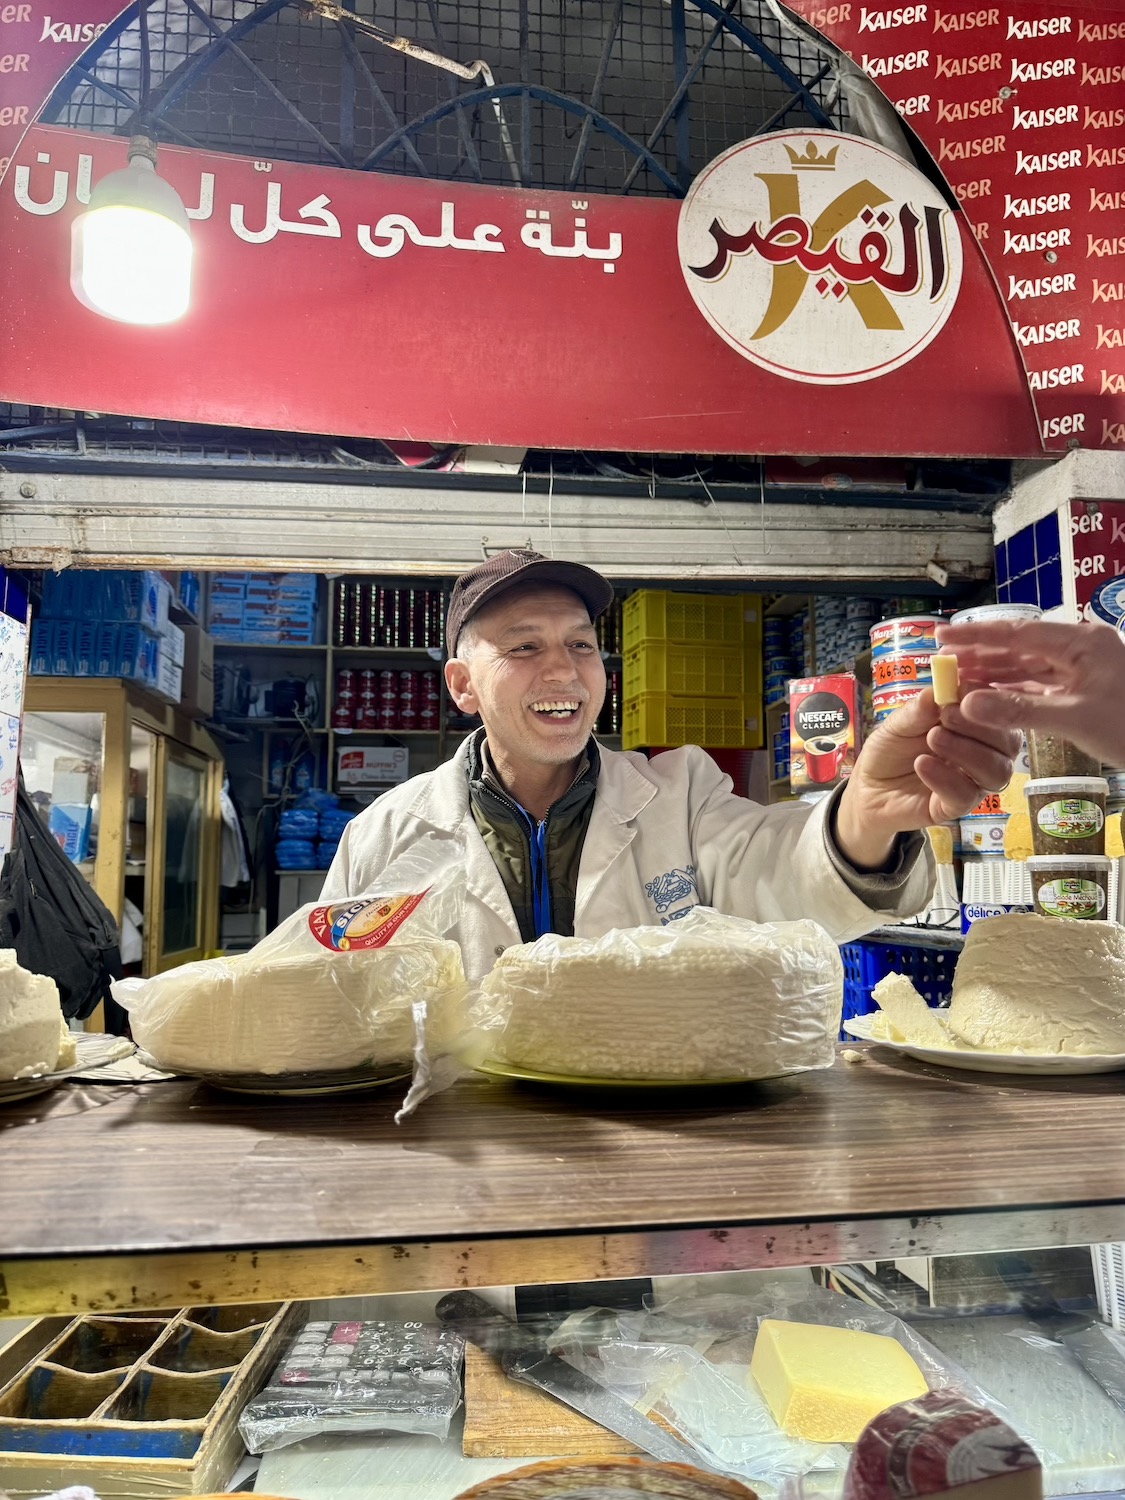 mercado central tunis tunisia